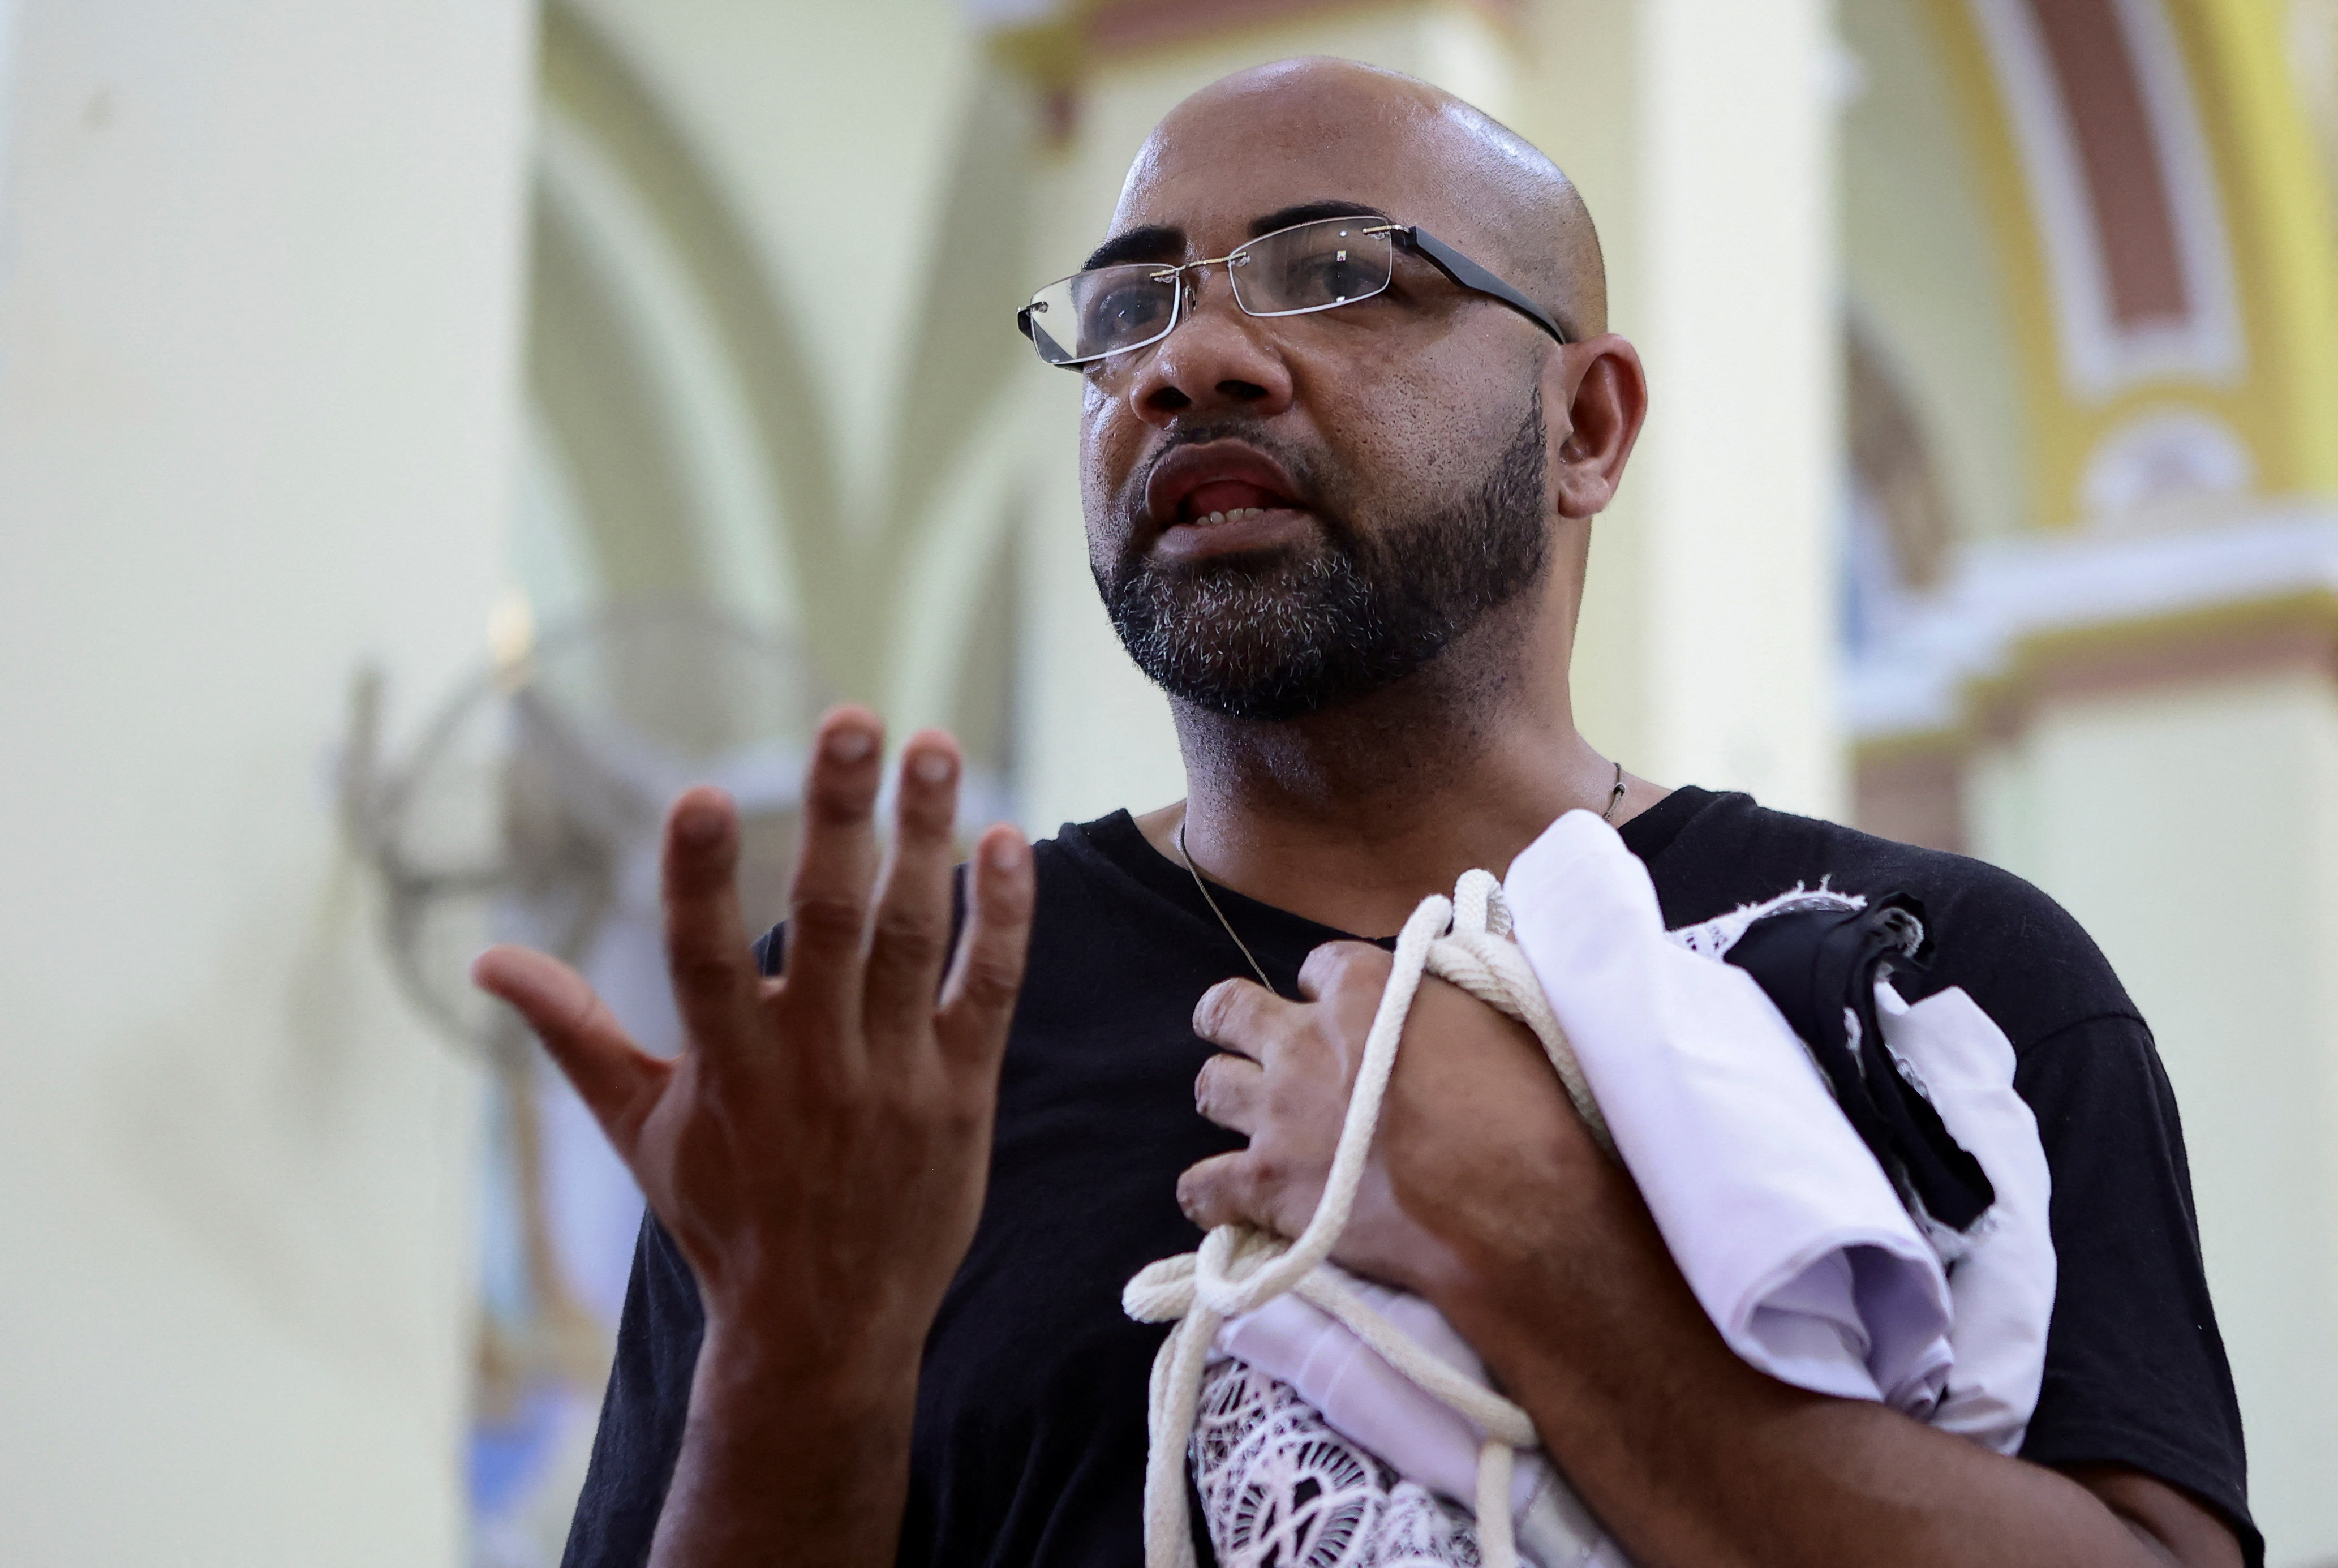 Del total de detenidos, se confirmó la liberación de 9 personas”. Ese reporte incluye la expulsión del país del sacerdote panameño Donaciano Alarcón. (REUTERS)